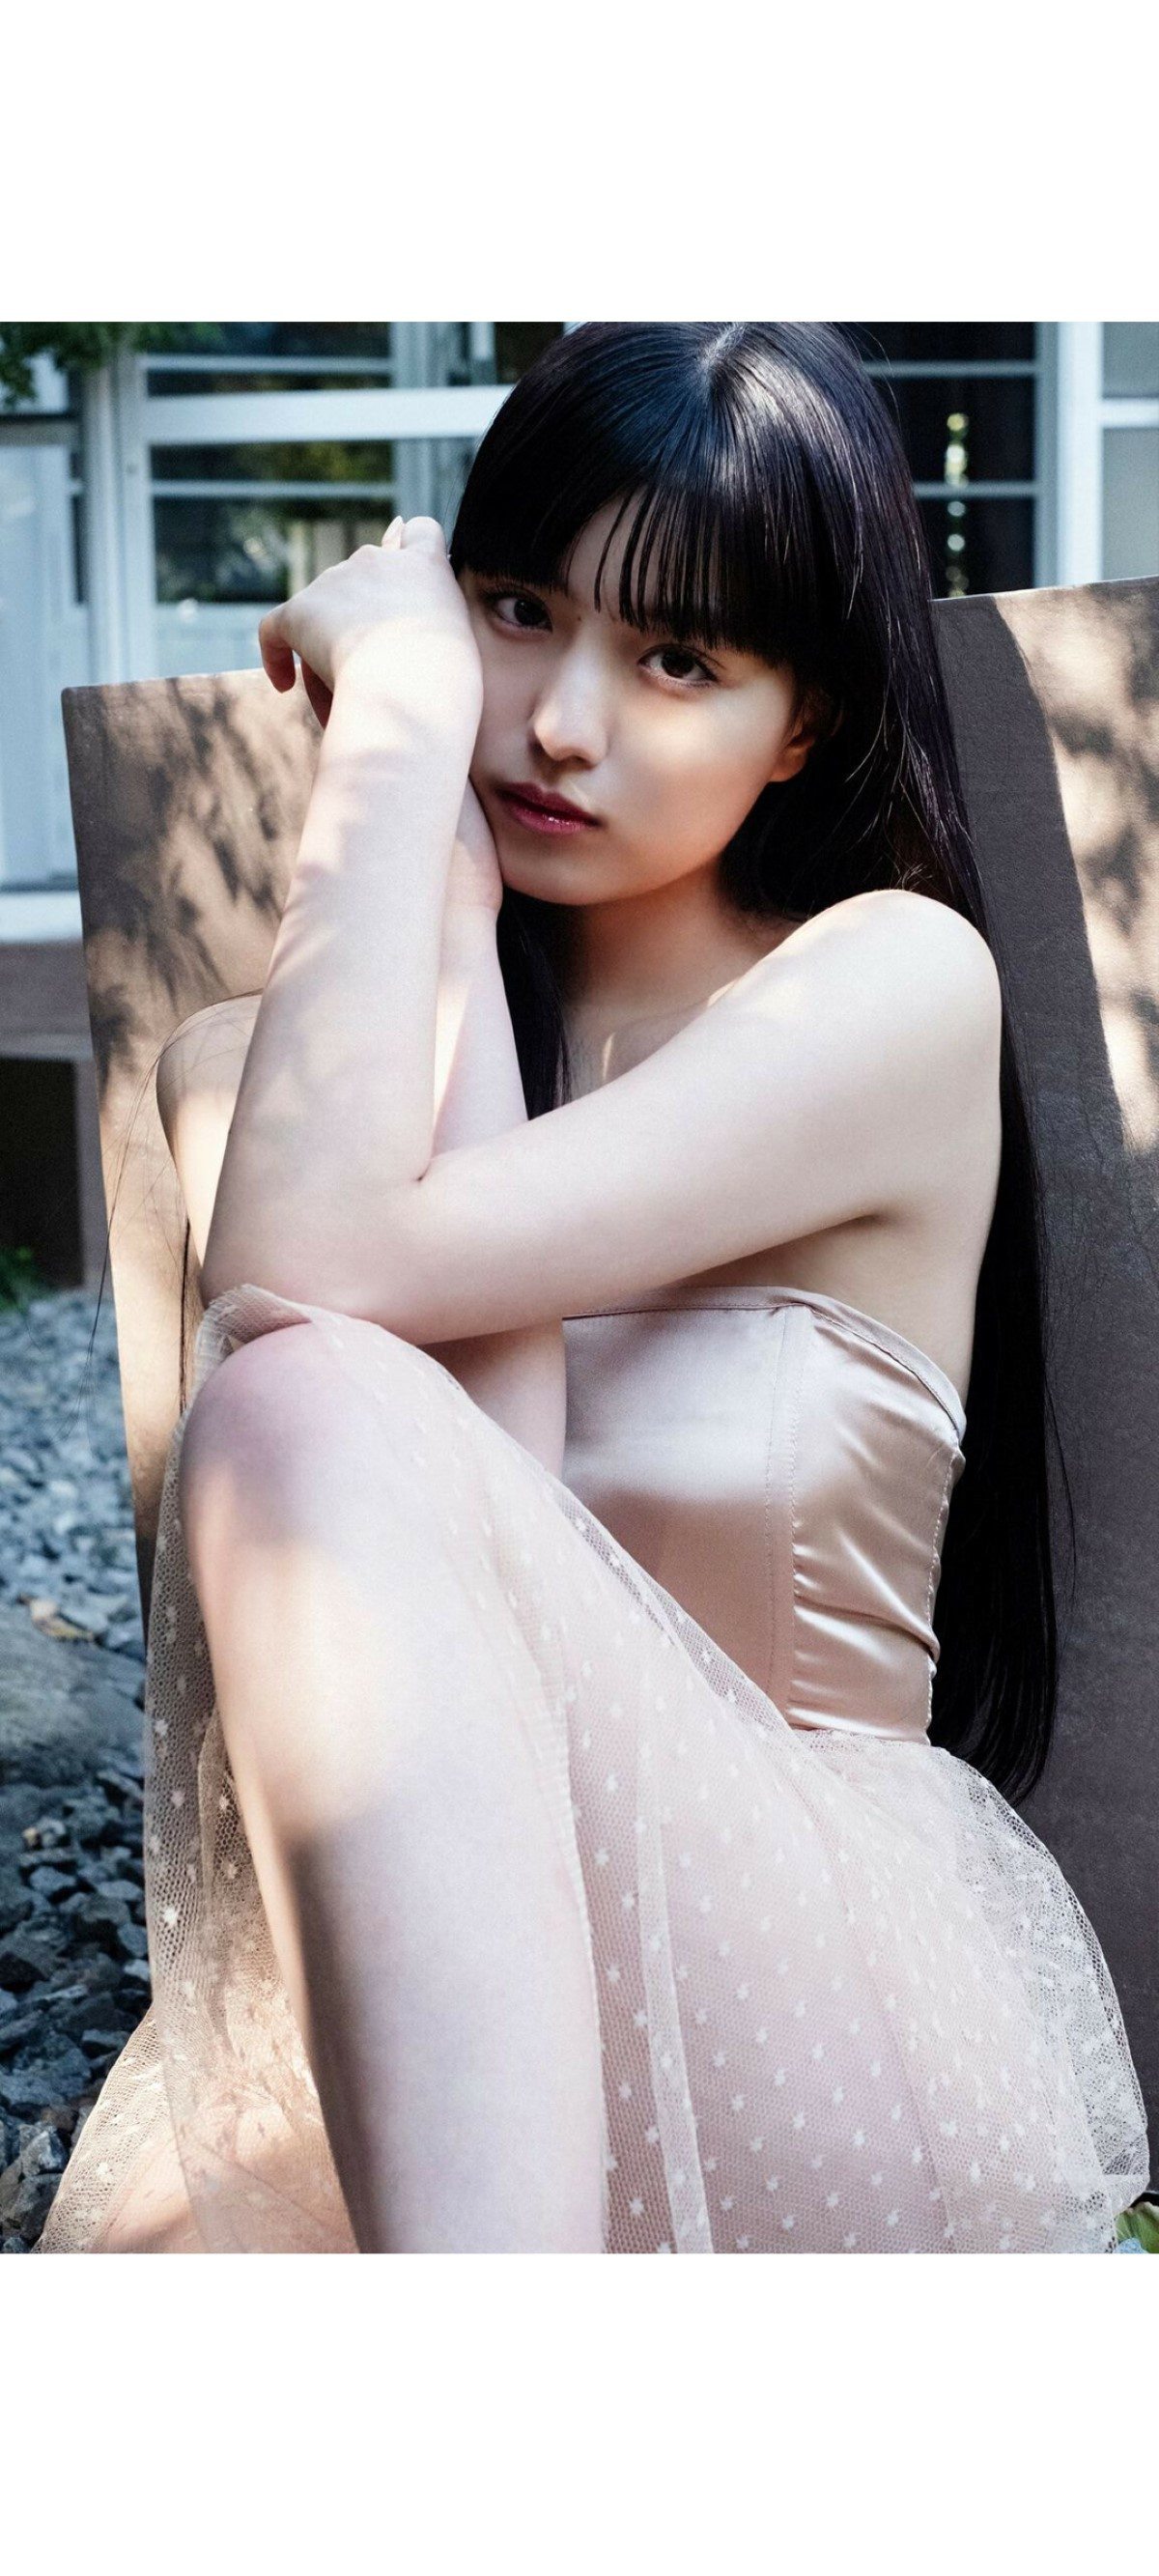 Weekly Photobook 2020 12 07 Noa Tsurushima 鶴嶋乃愛 A natural actress 生まれながらにして女優 0027 1259029442.jpg